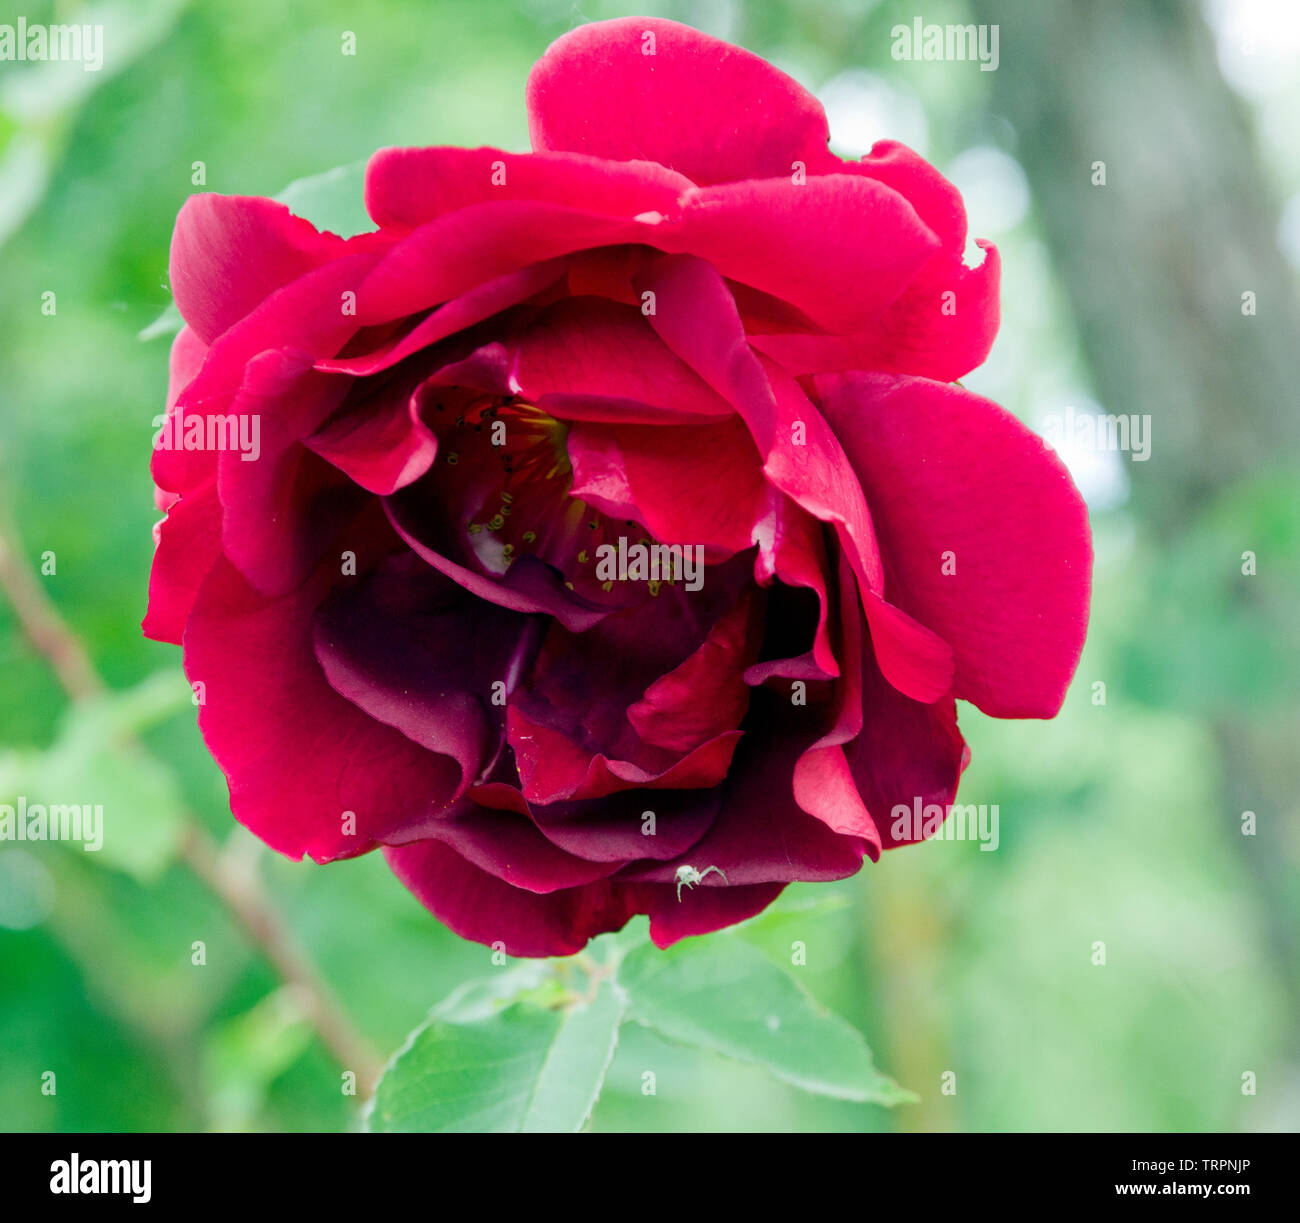 Rose Etoile de Hollande Stock Photo - Alamy